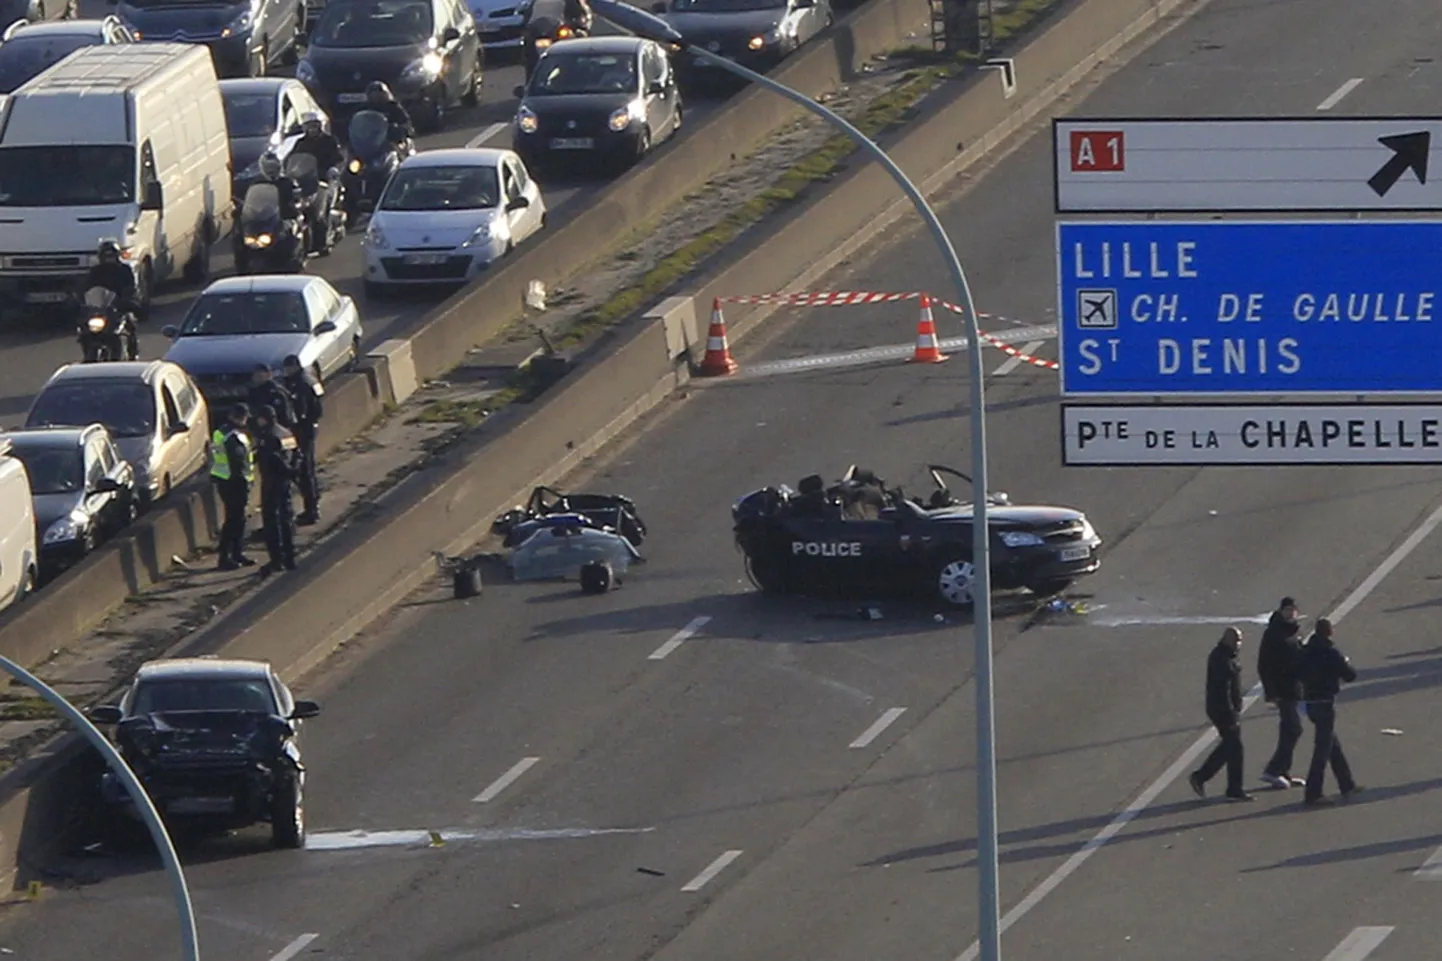 Prantsuse politseinikud tänahommikuse liiklusõnnetuse paigas Pariisi ringteel.